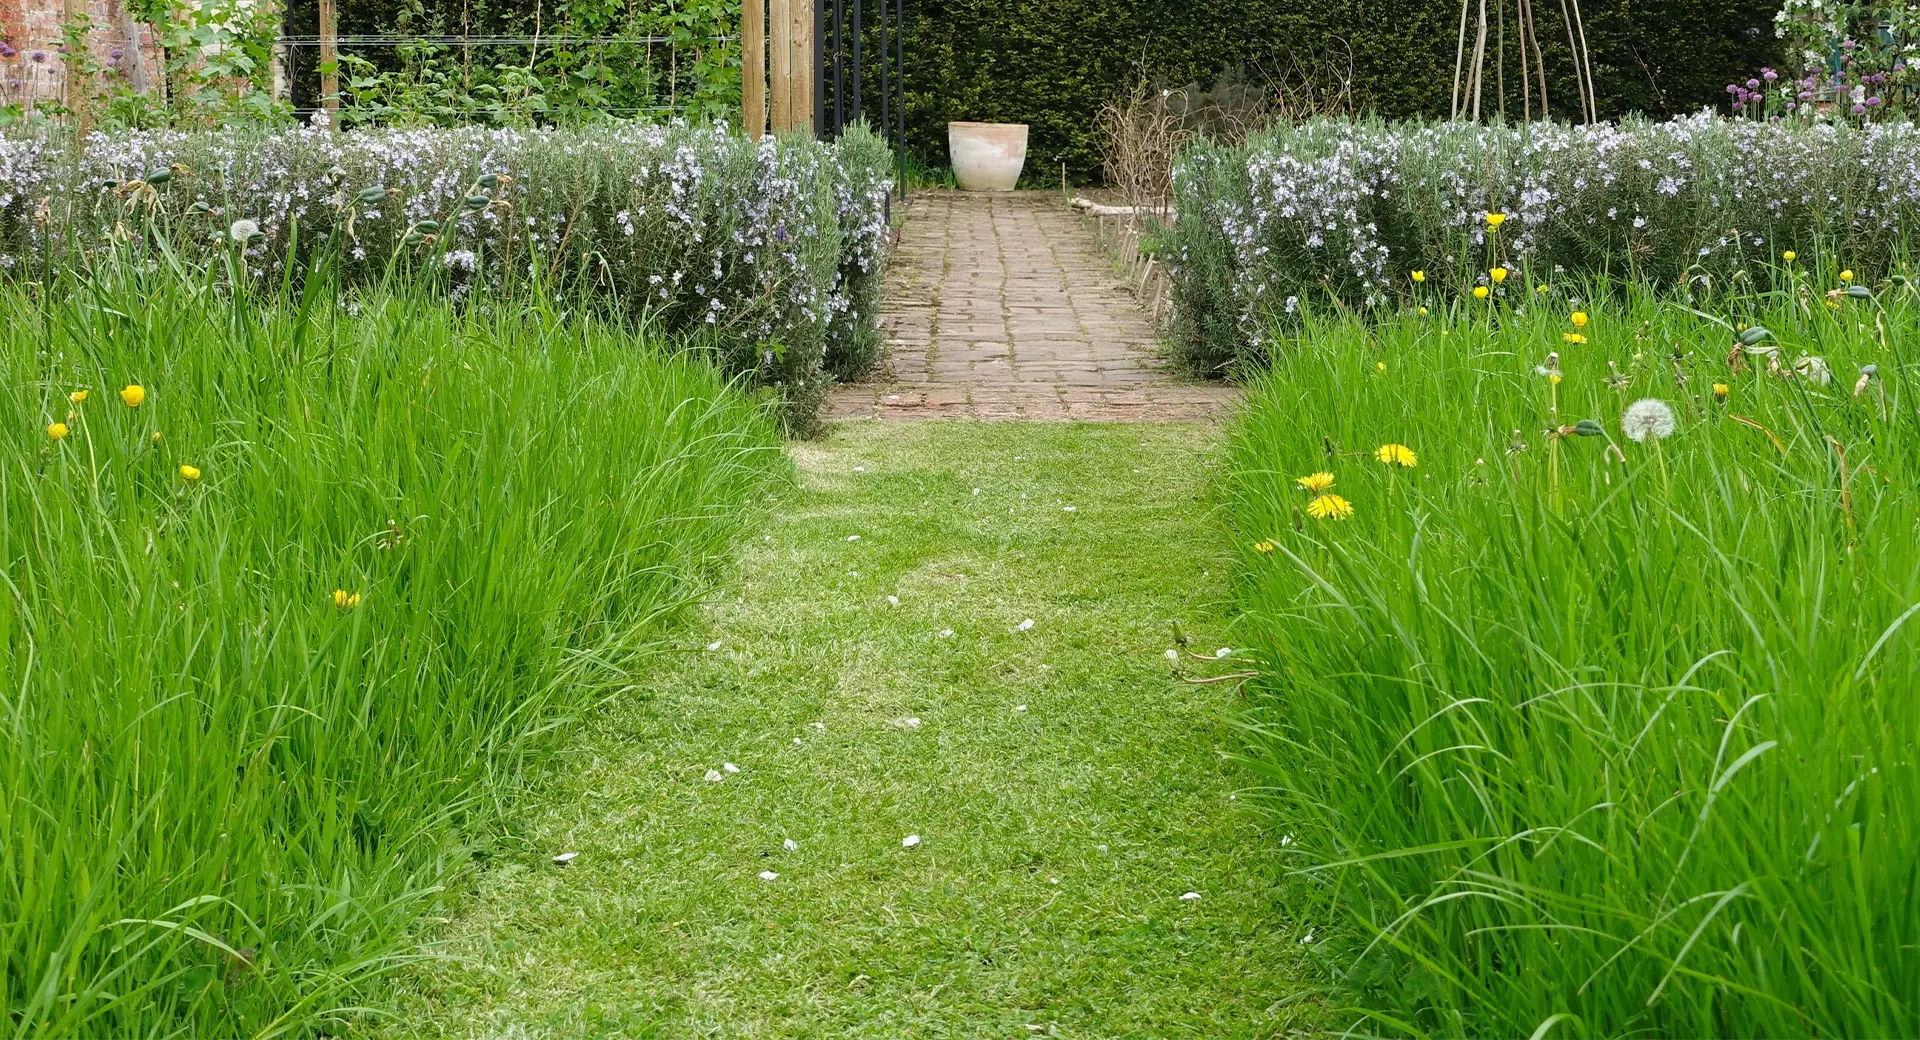 A garden with freshly cut grass